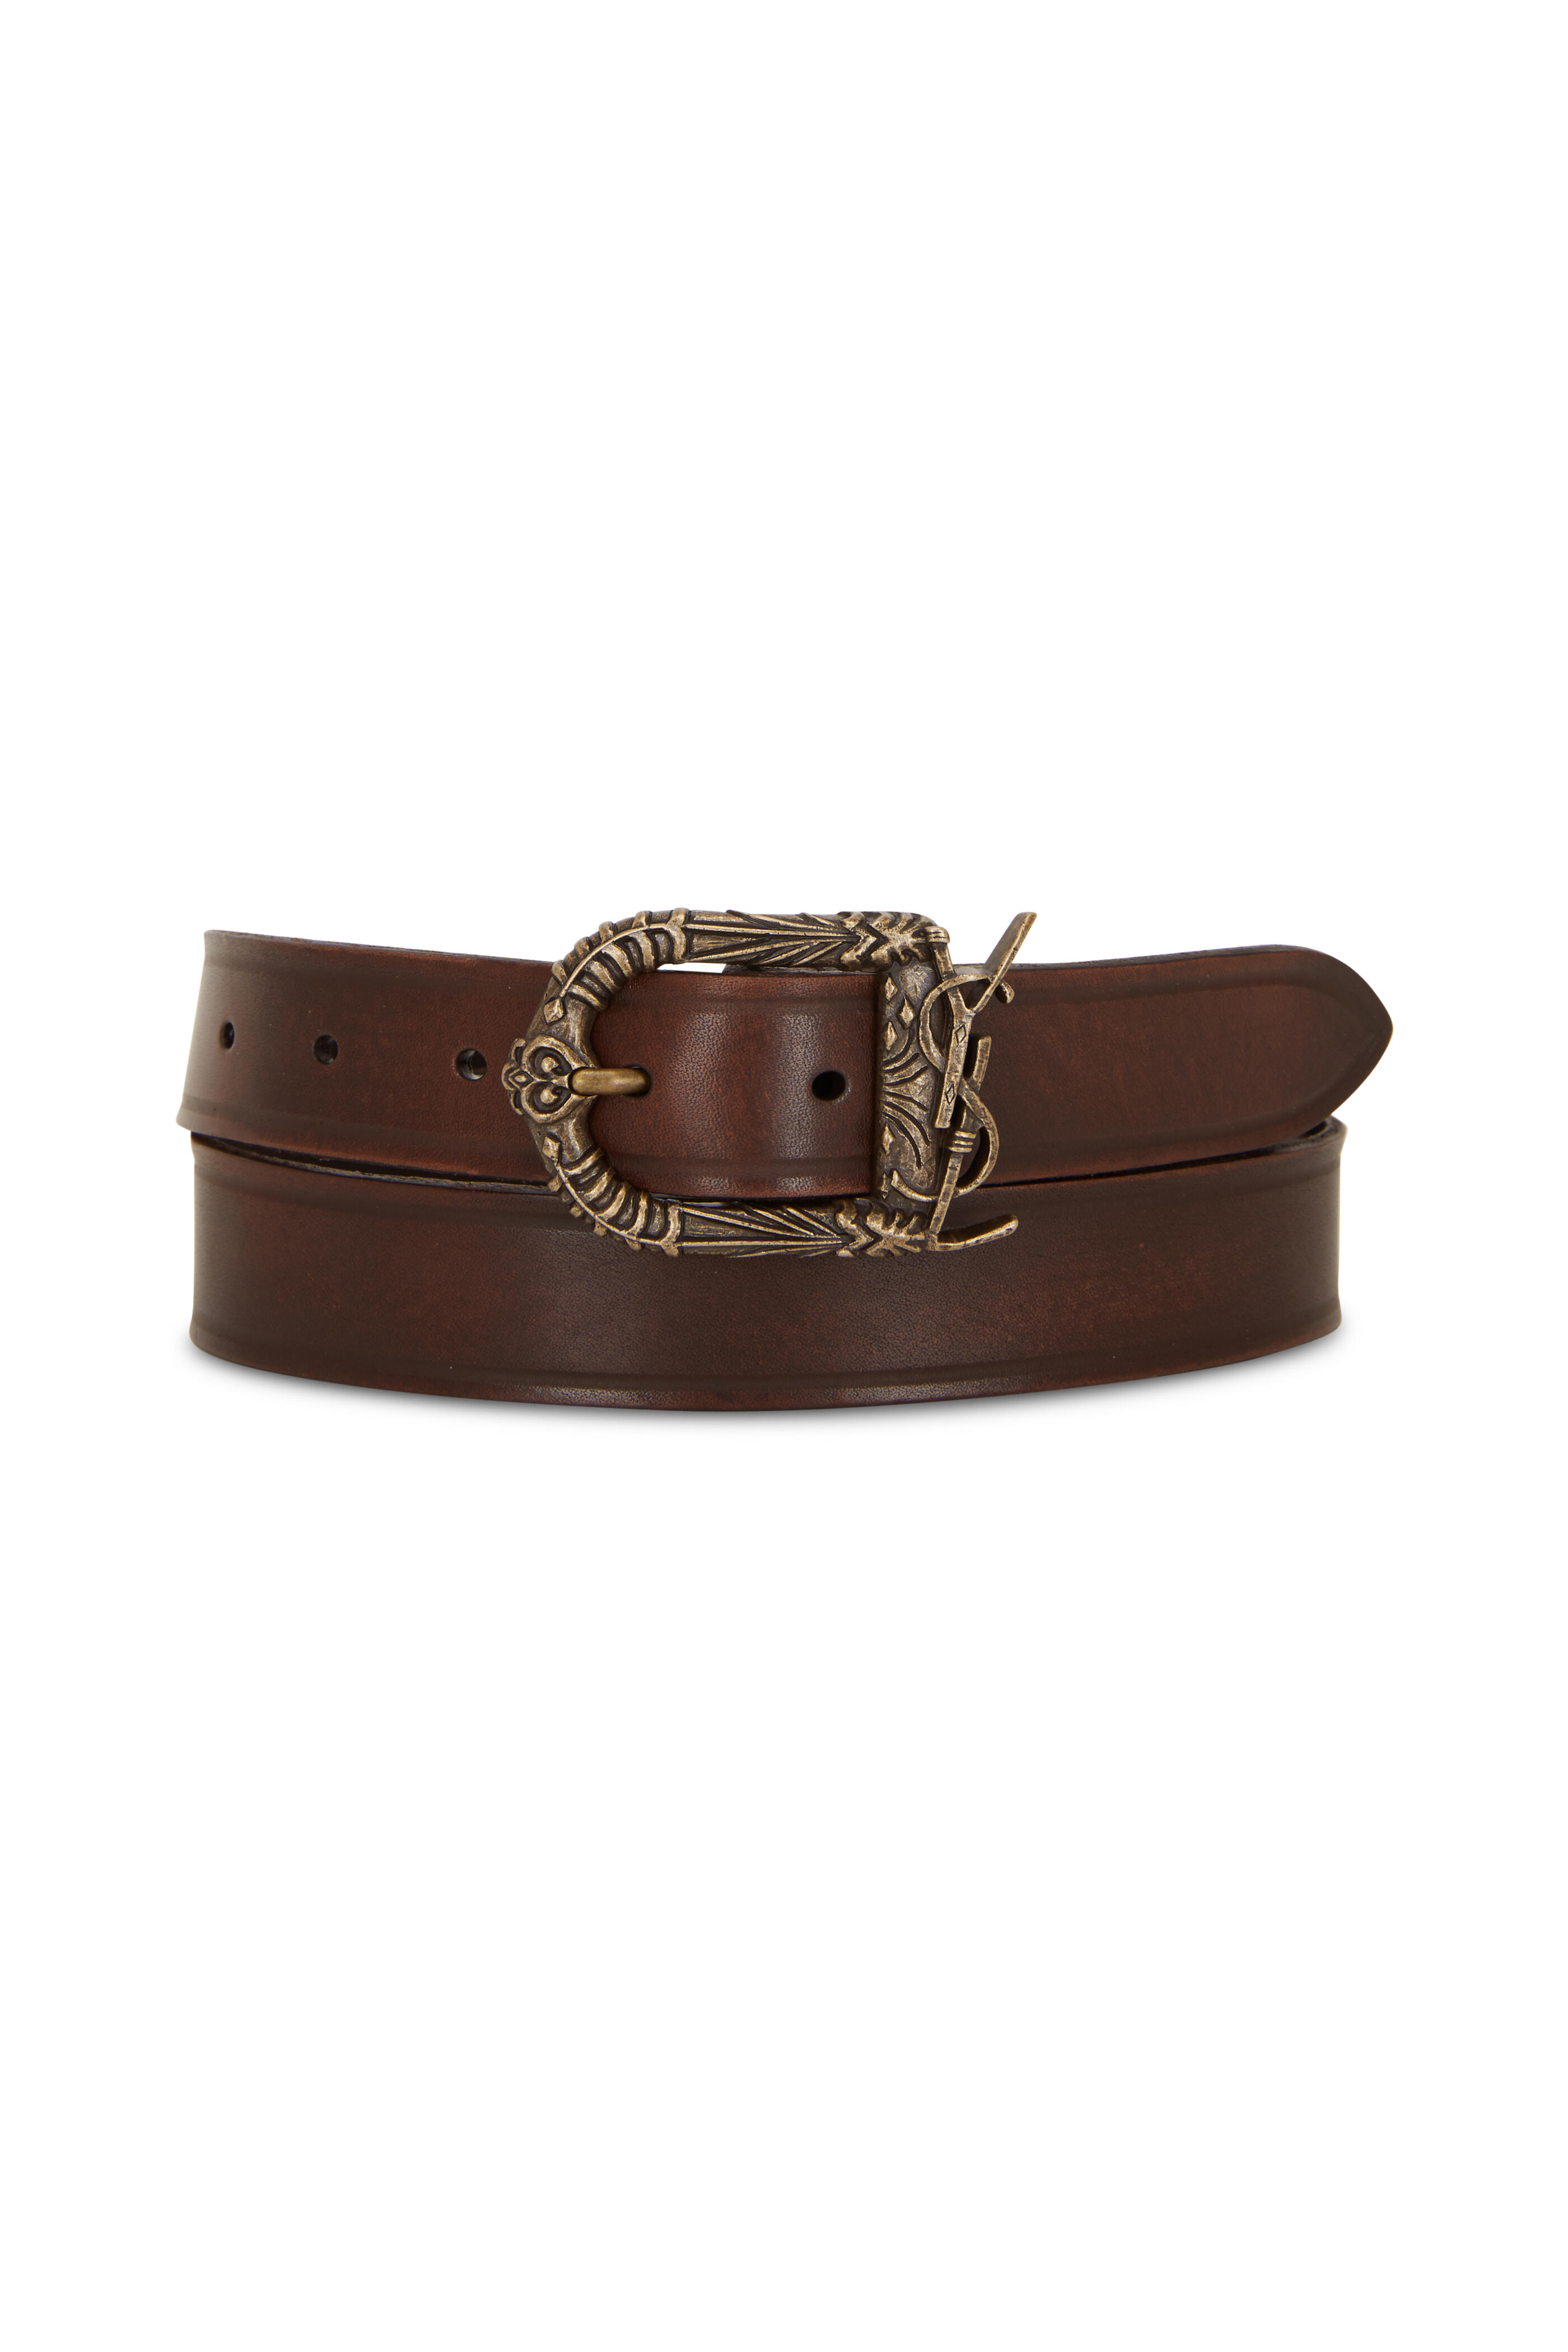 SAINT LAURENT 3cm Leather Belt for Men